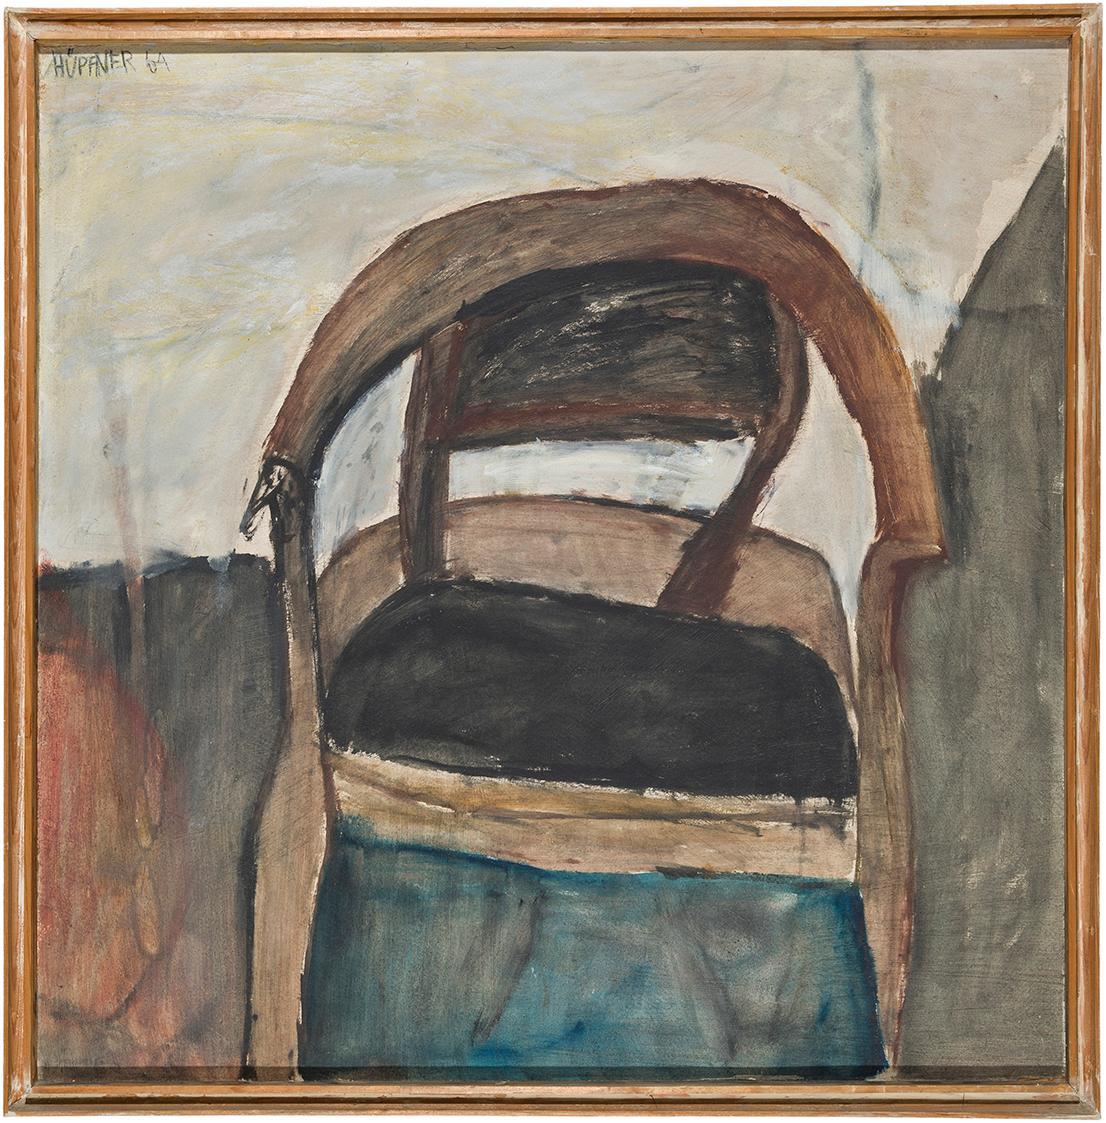 Kurt Hüpfner, Ohne Titel, 1964, Öl auf Pappe, 69,7 × 68,8 cm, Privatbesitz, Wien